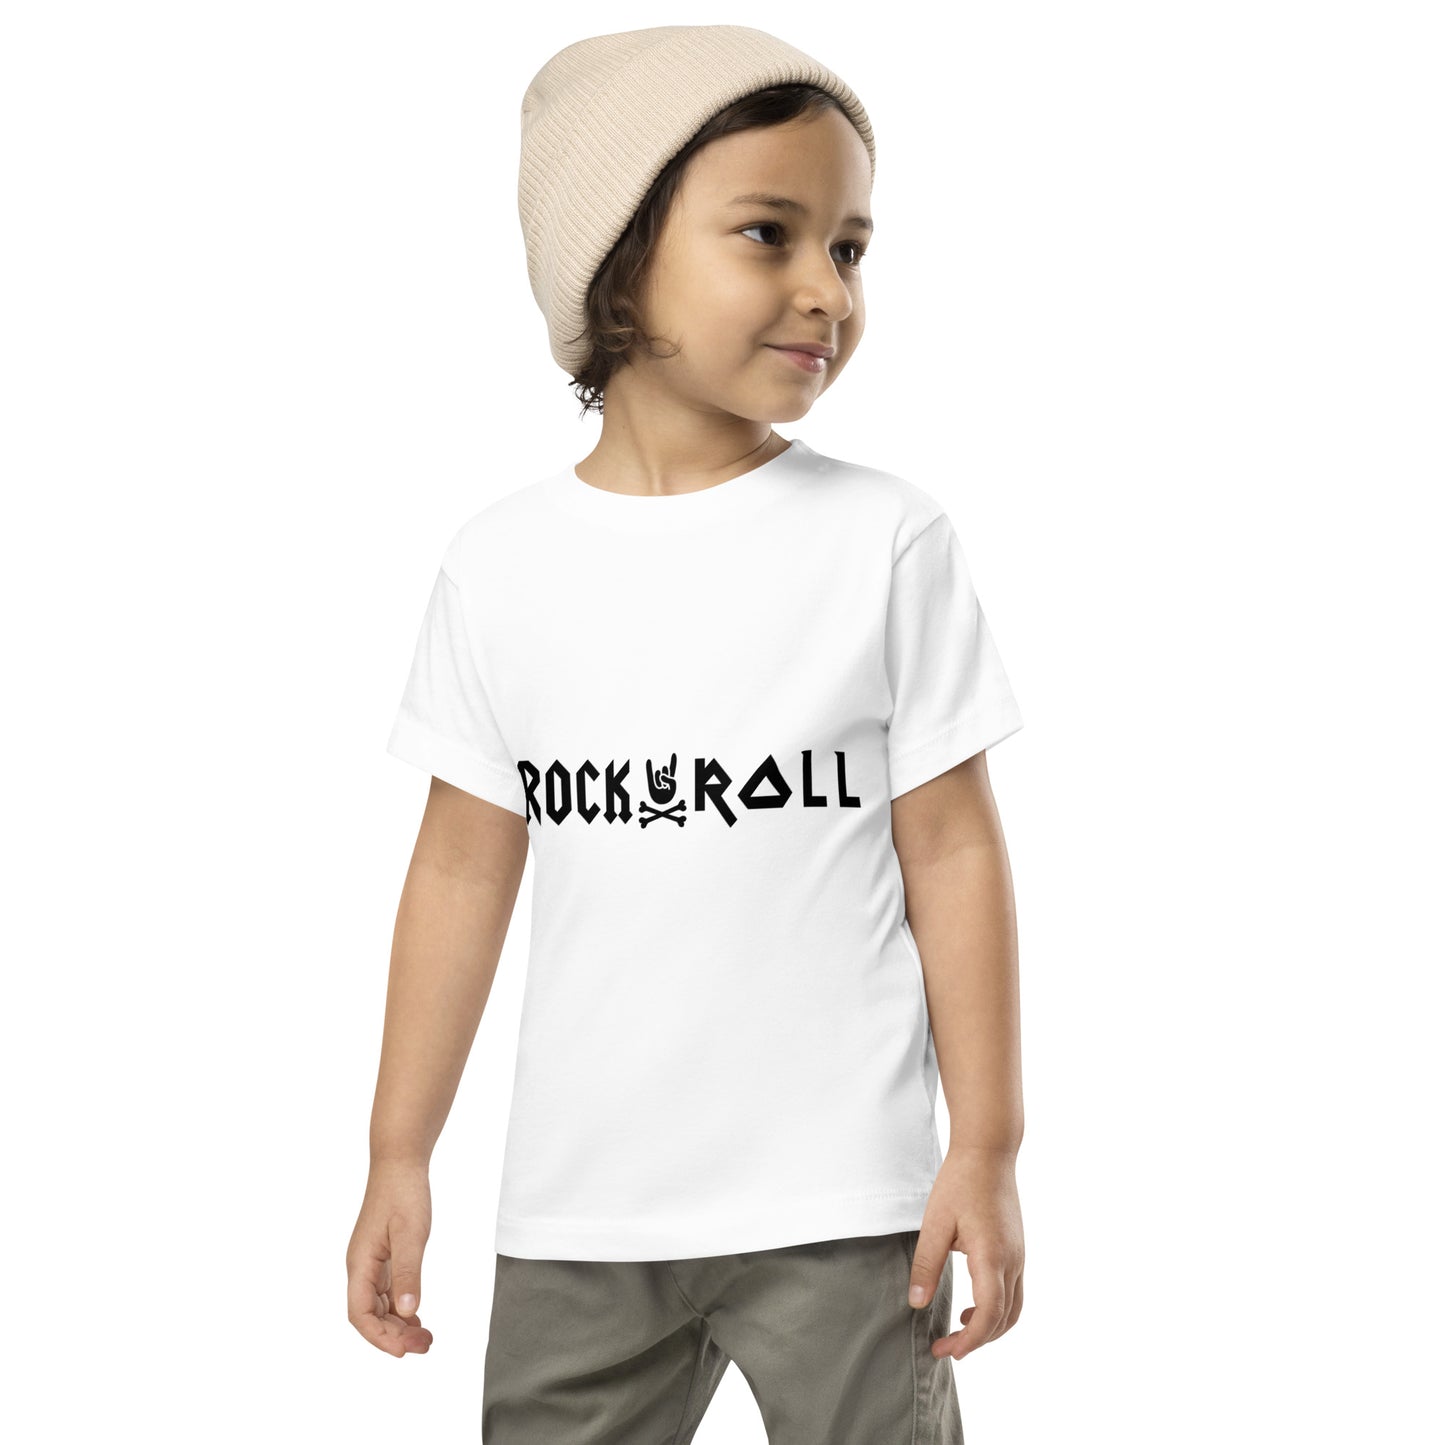 ACmaiden Toddler Short Sleeve White T-Shirt